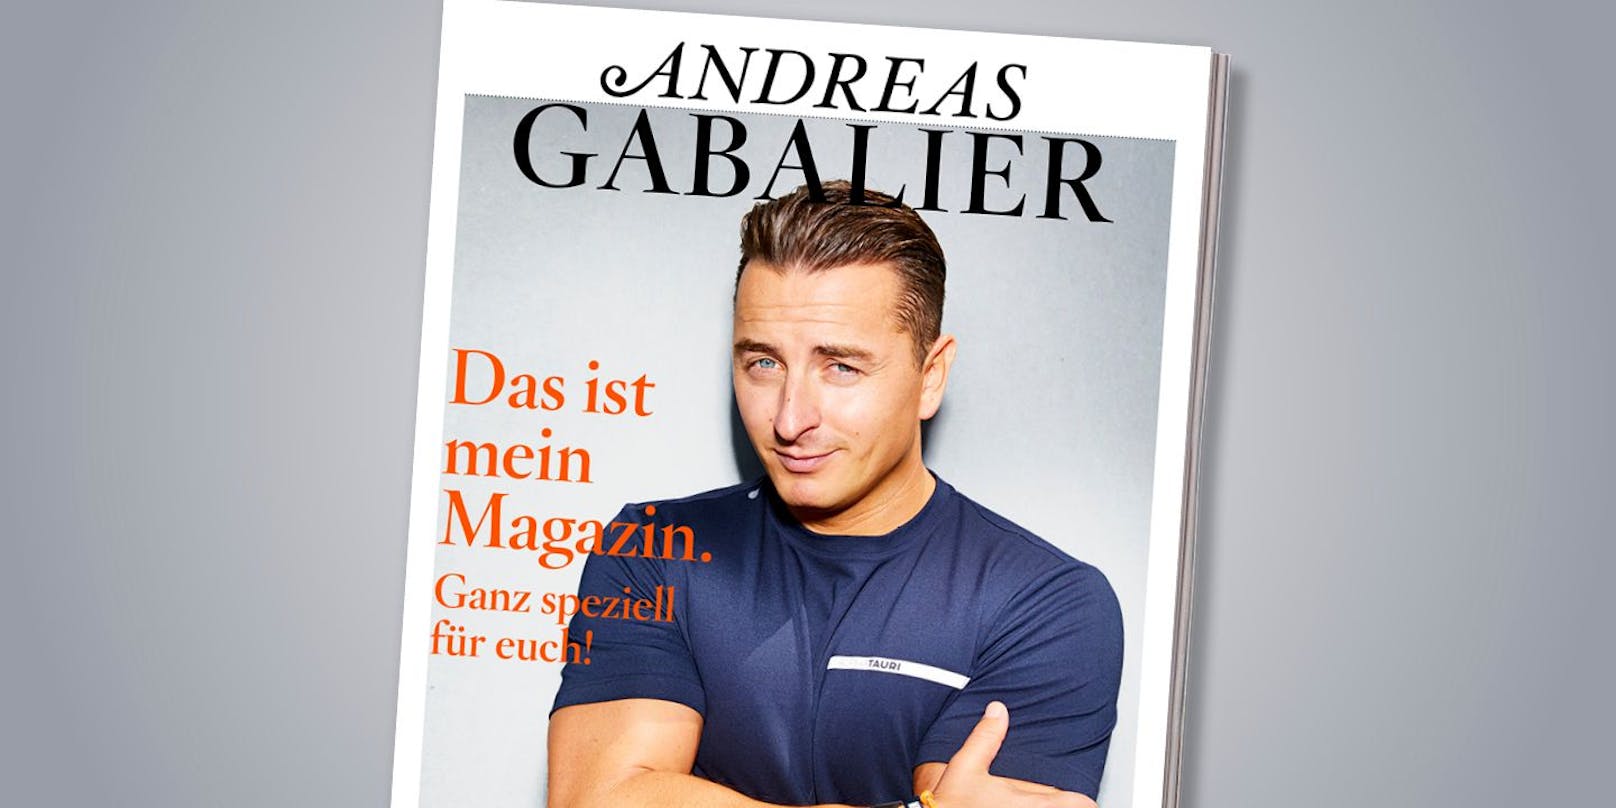 Neuer Job – Andreas Gabalier heuert bei Konzern an